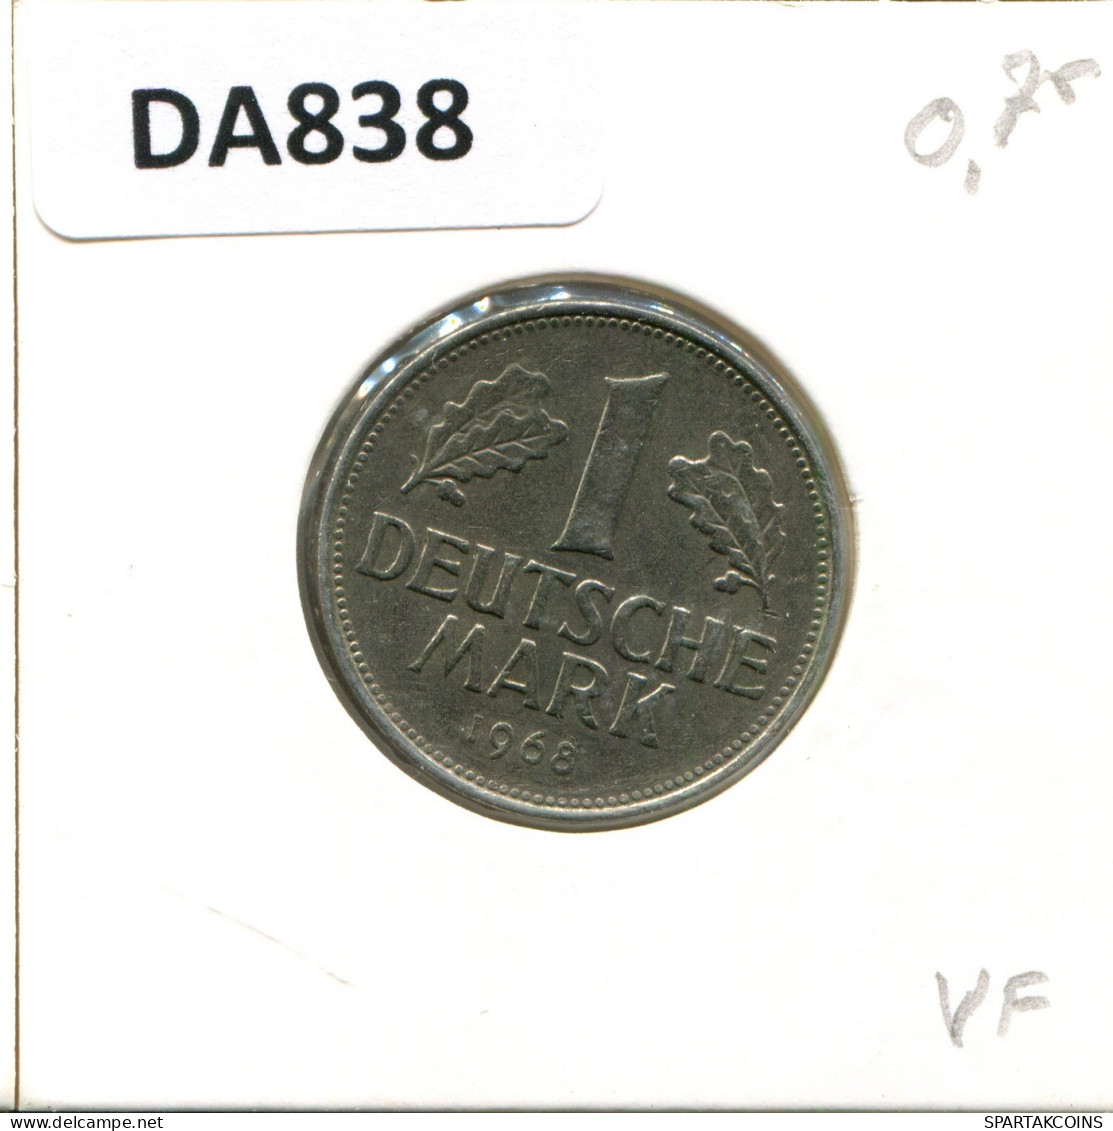 1 DM 1968 F BRD ALEMANIA Moneda GERMANY #DA838.E.A - 1 Marco